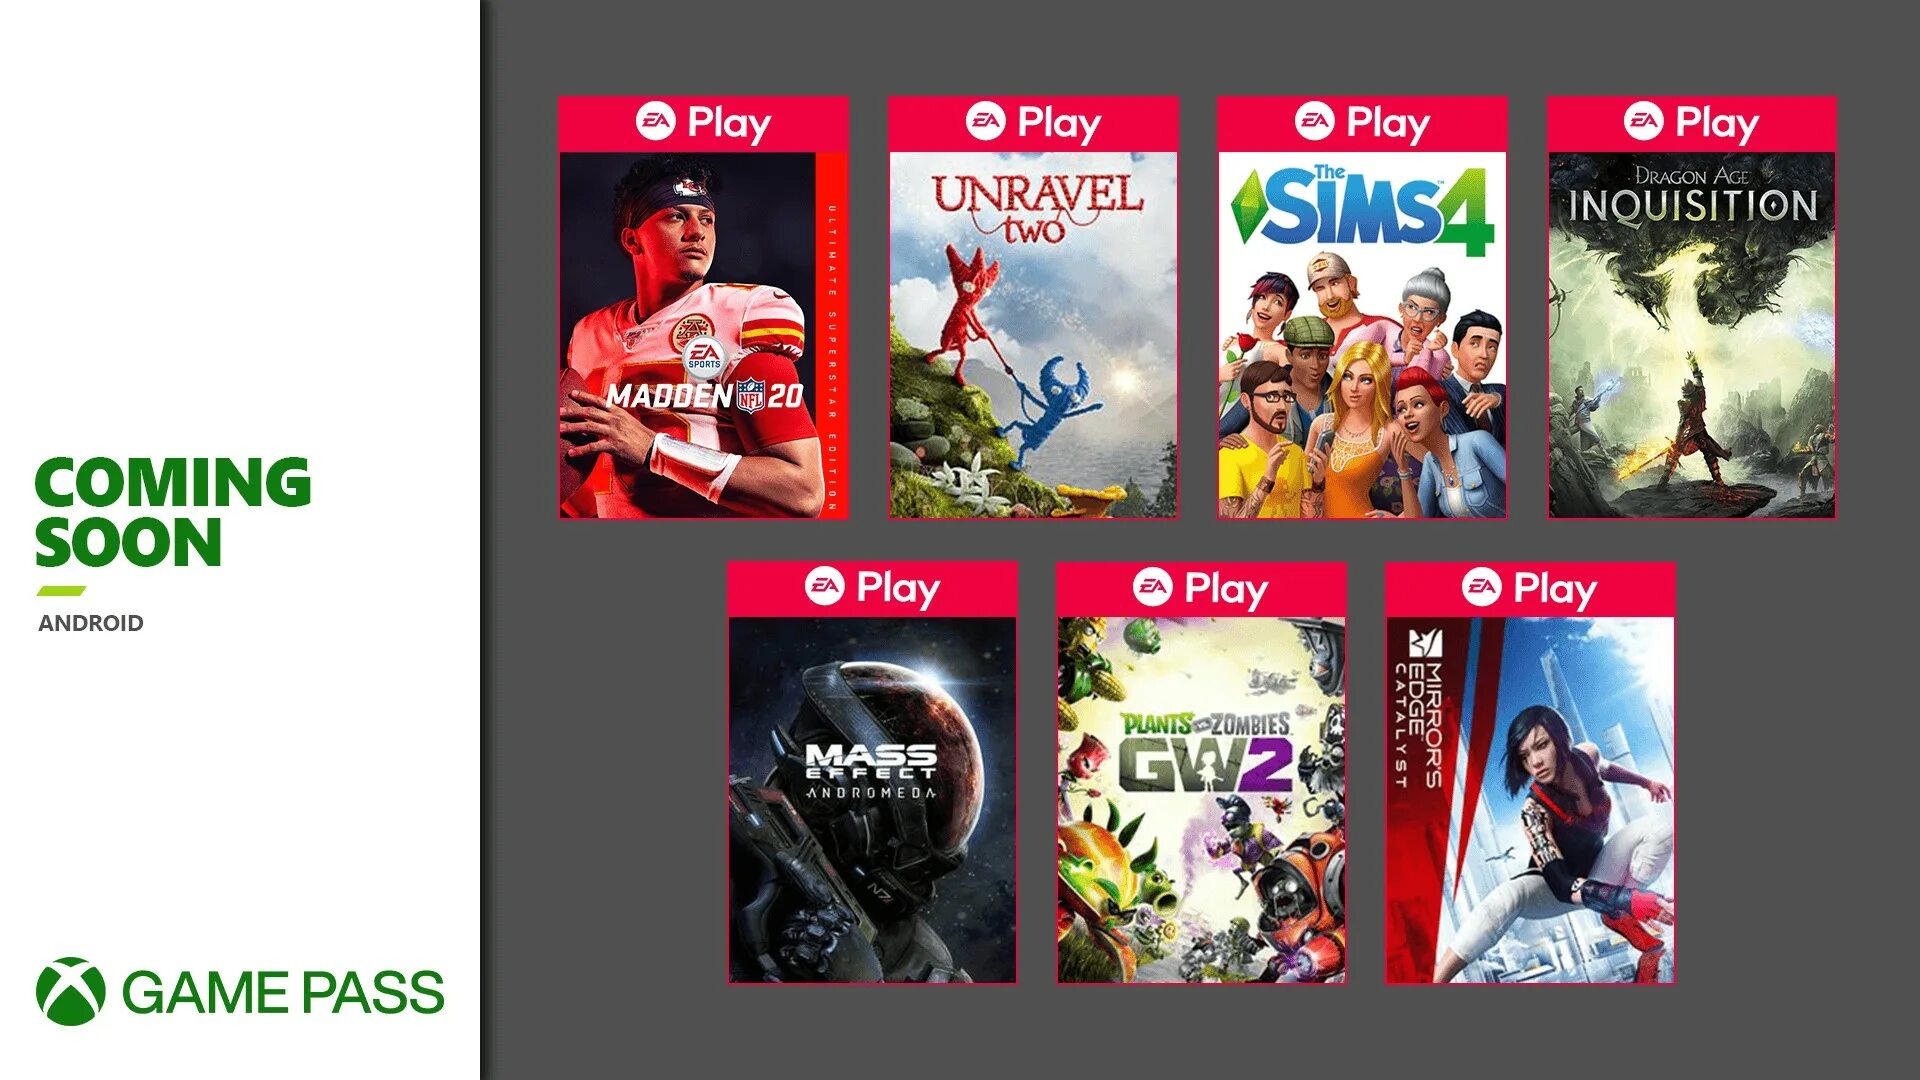 ГЕЙМПАСС Xbox игры. Game Pass Ultimate игры. Xbox game Pass Ultimate. Подписка ультимейт для Xbox. Купить подписку на xbox series